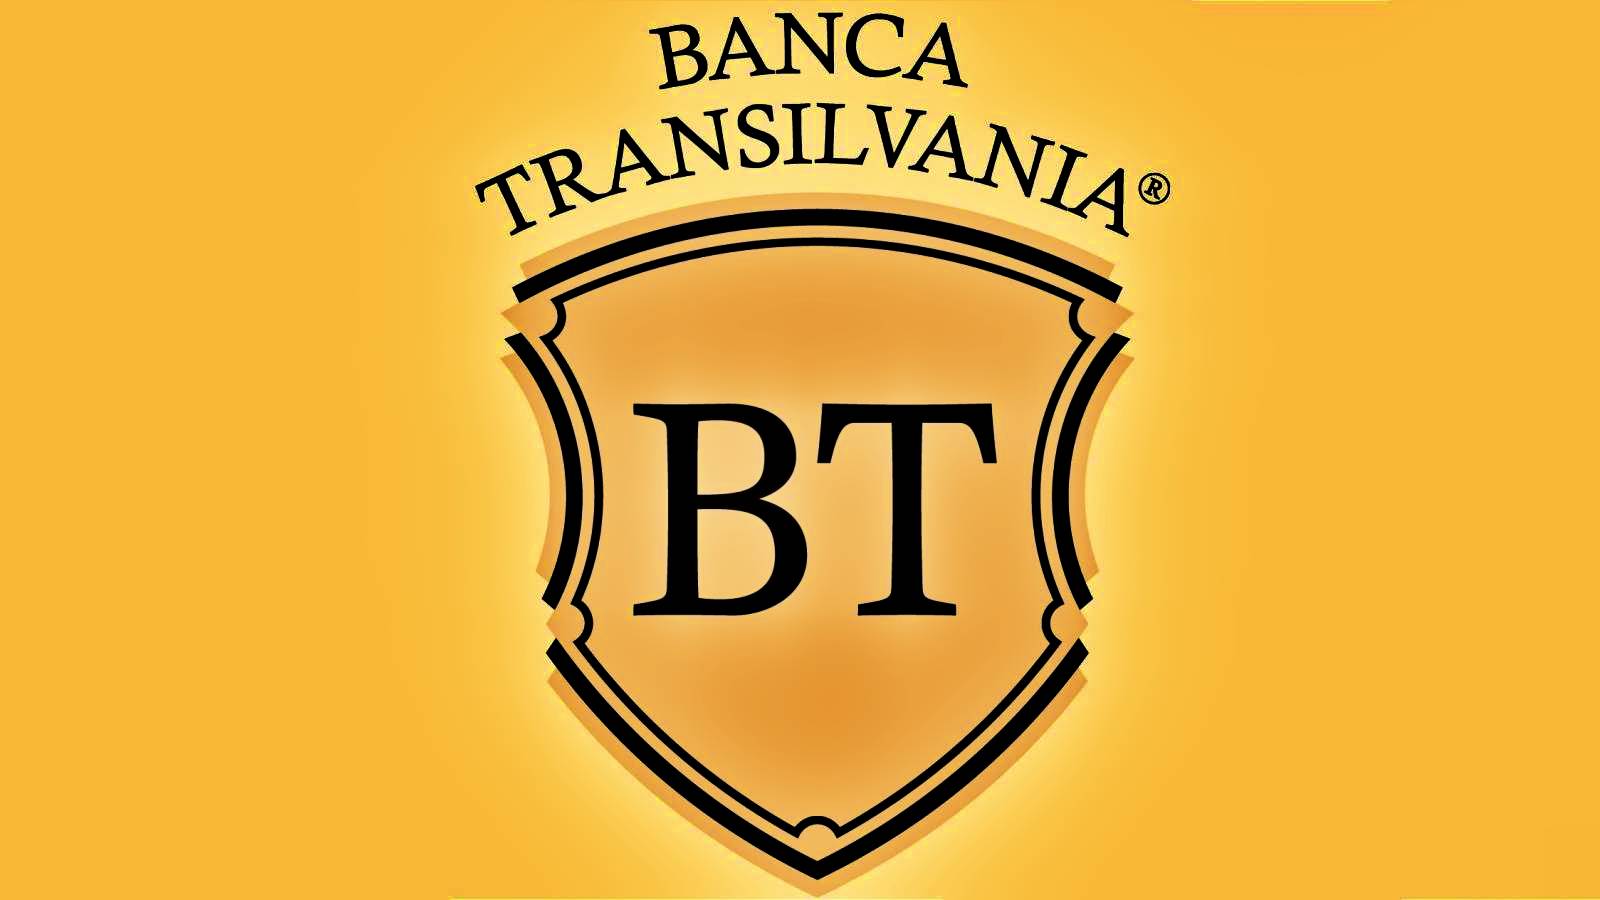 BANCA Transilvania Officiel HASTE-information sendt til rumænske kunder